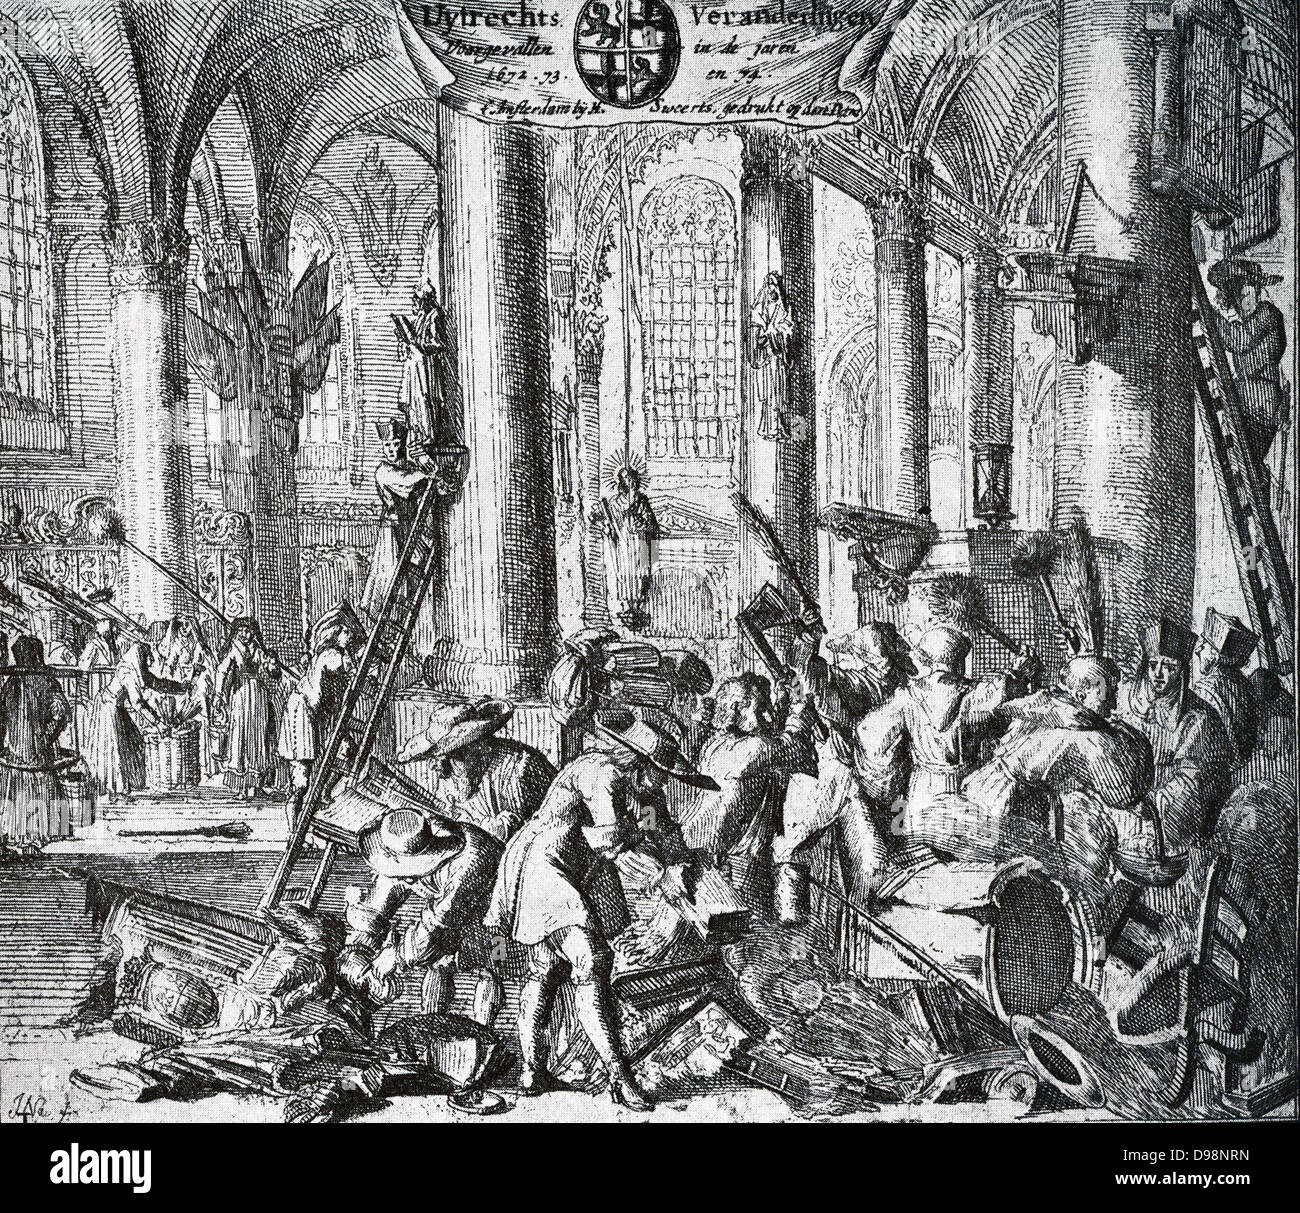 1672-1674. Im Jahre 1672, als die Französische genommen hatte Besitz von Utrecht, wurde der Dom wieder in Gebrauch für die Katholiken Gottesdienst gebracht. Die Kirche war 97 neue Icons in gebracht wurden, während die evangelischen Bibeln, Sammlung Taschen,, Stühle usw. verbrannt wurden, Stockfoto